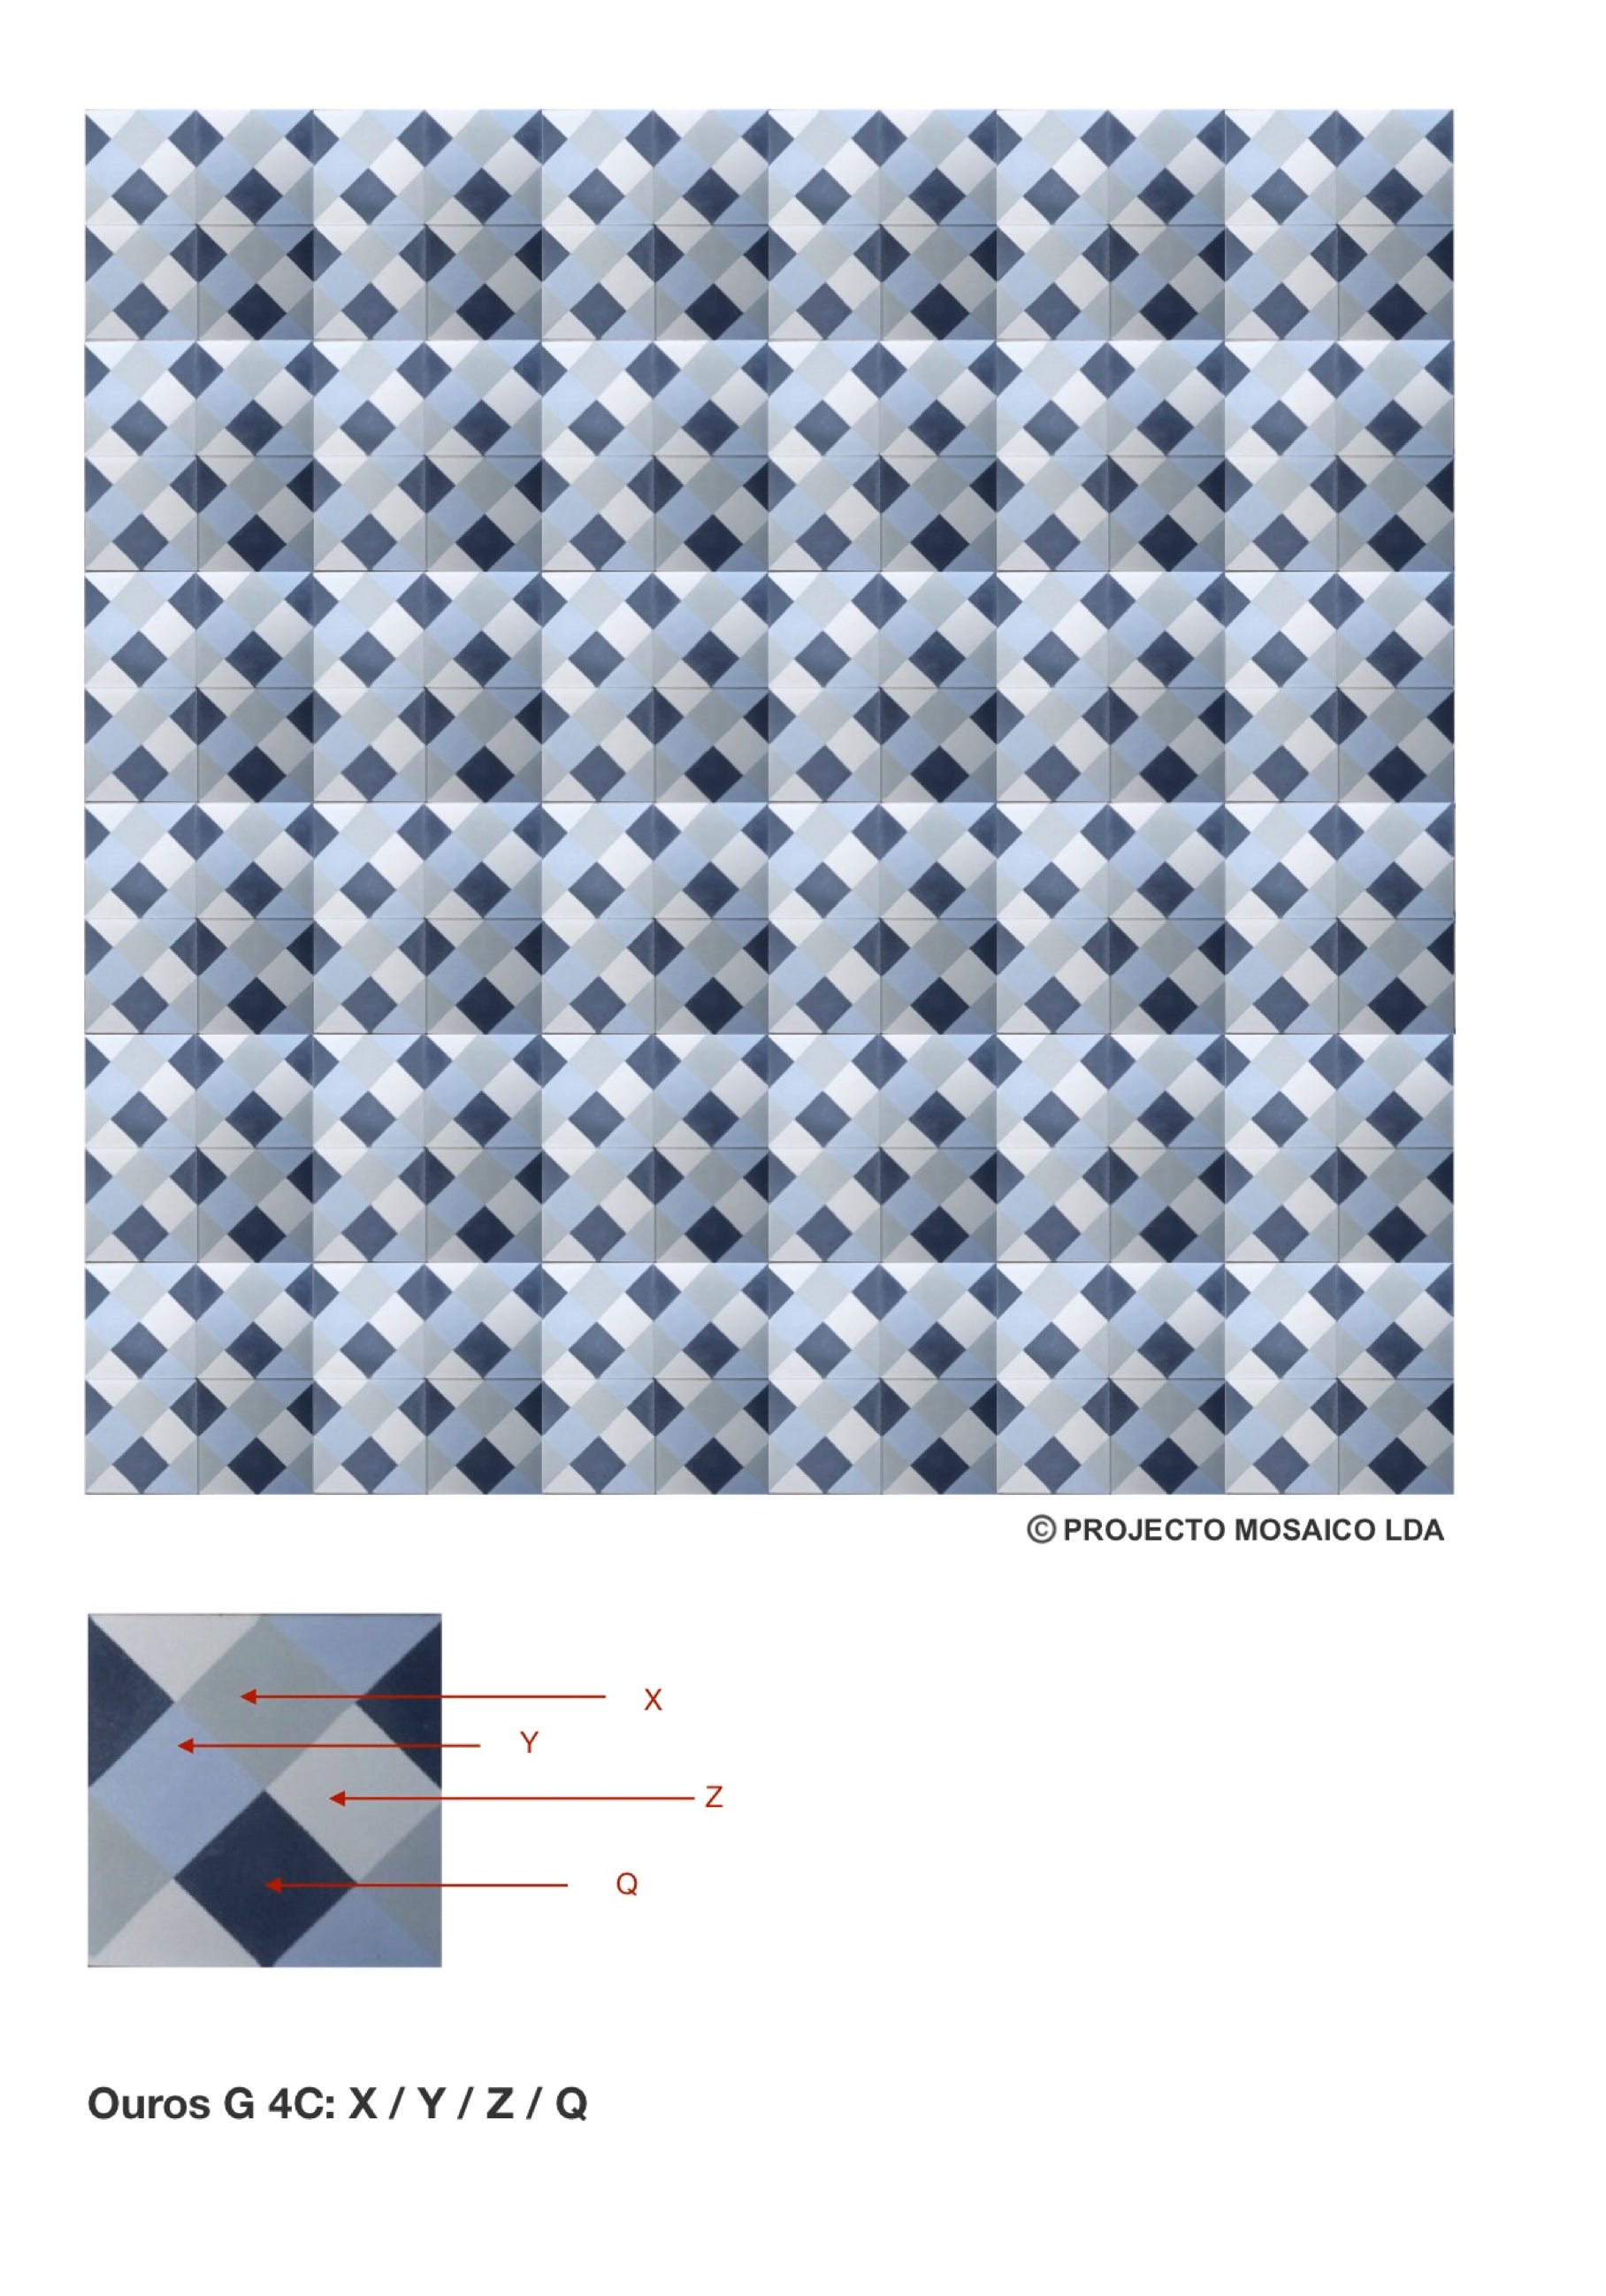 illustração de aplicação do mosaico hidráulico ref: Ouros G 4C